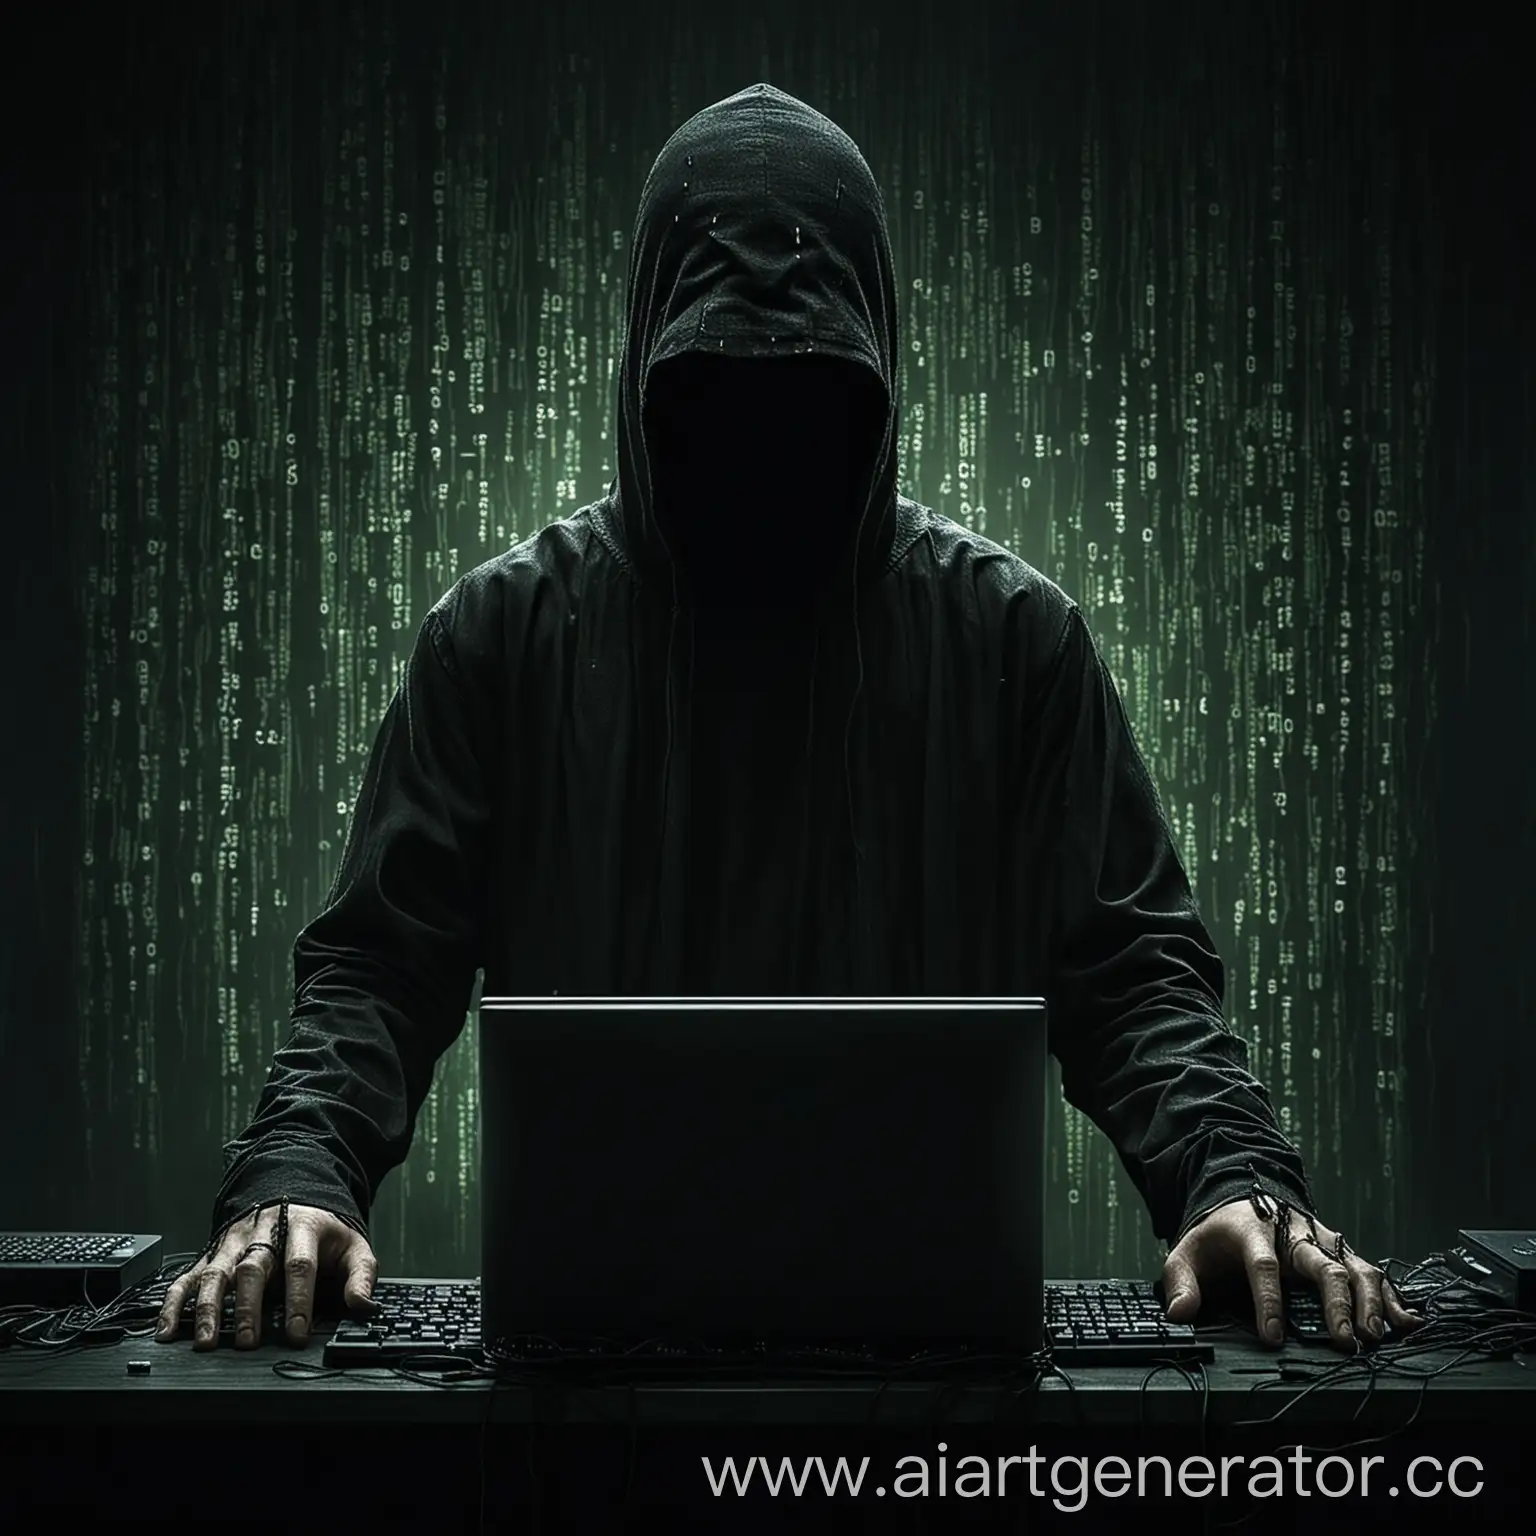 темный хакер, без лица, программирует возле компьютера, все немного похоже на фильм матрица. Немного все темно и очень таинственно.